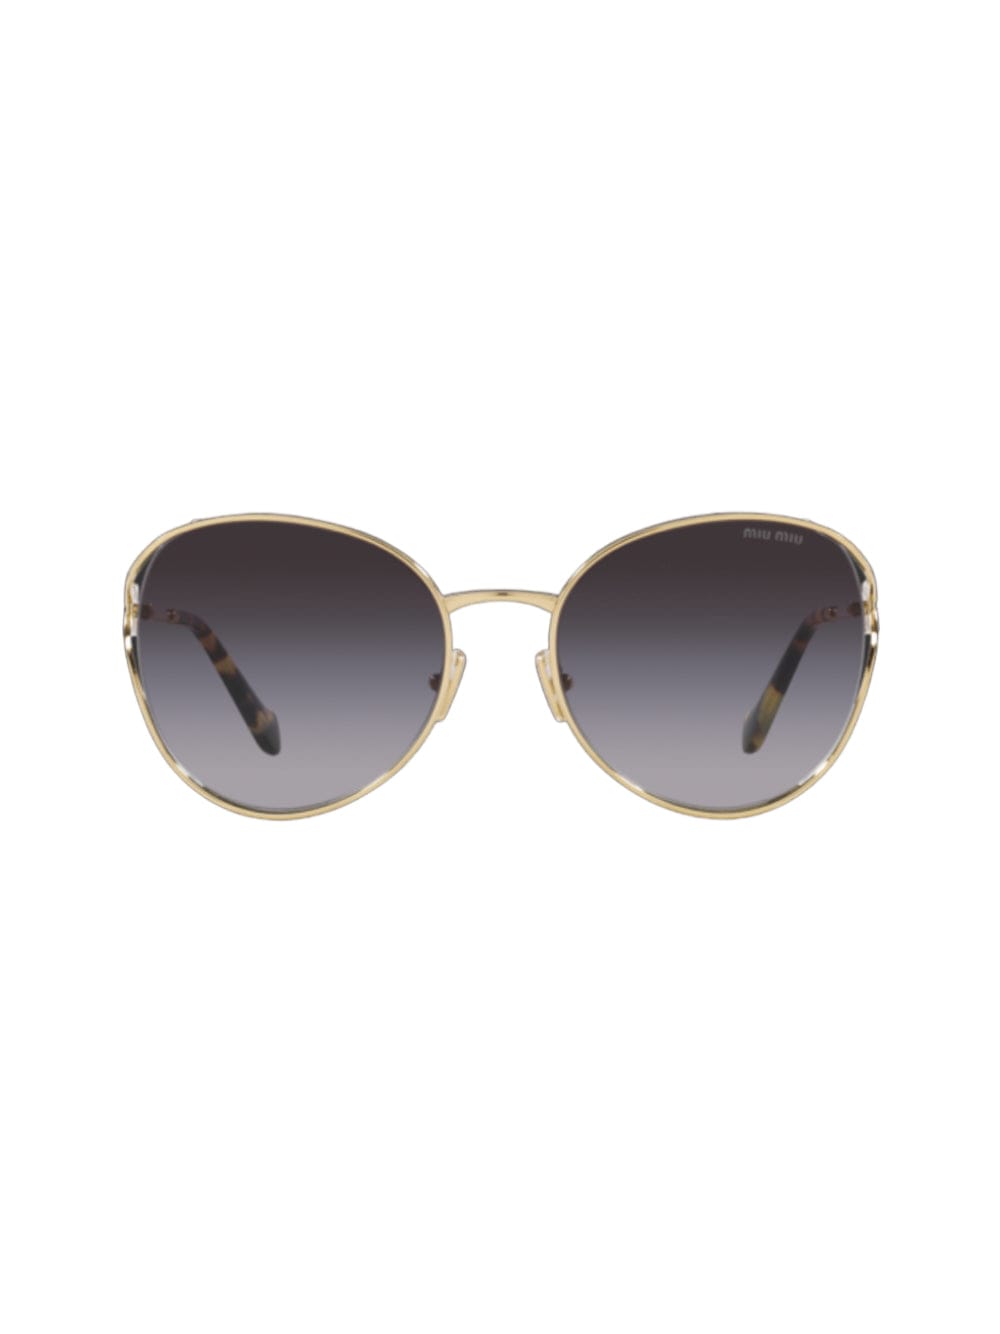 Shop Miu Miu 0mu 53ys - Gold Sunglasses